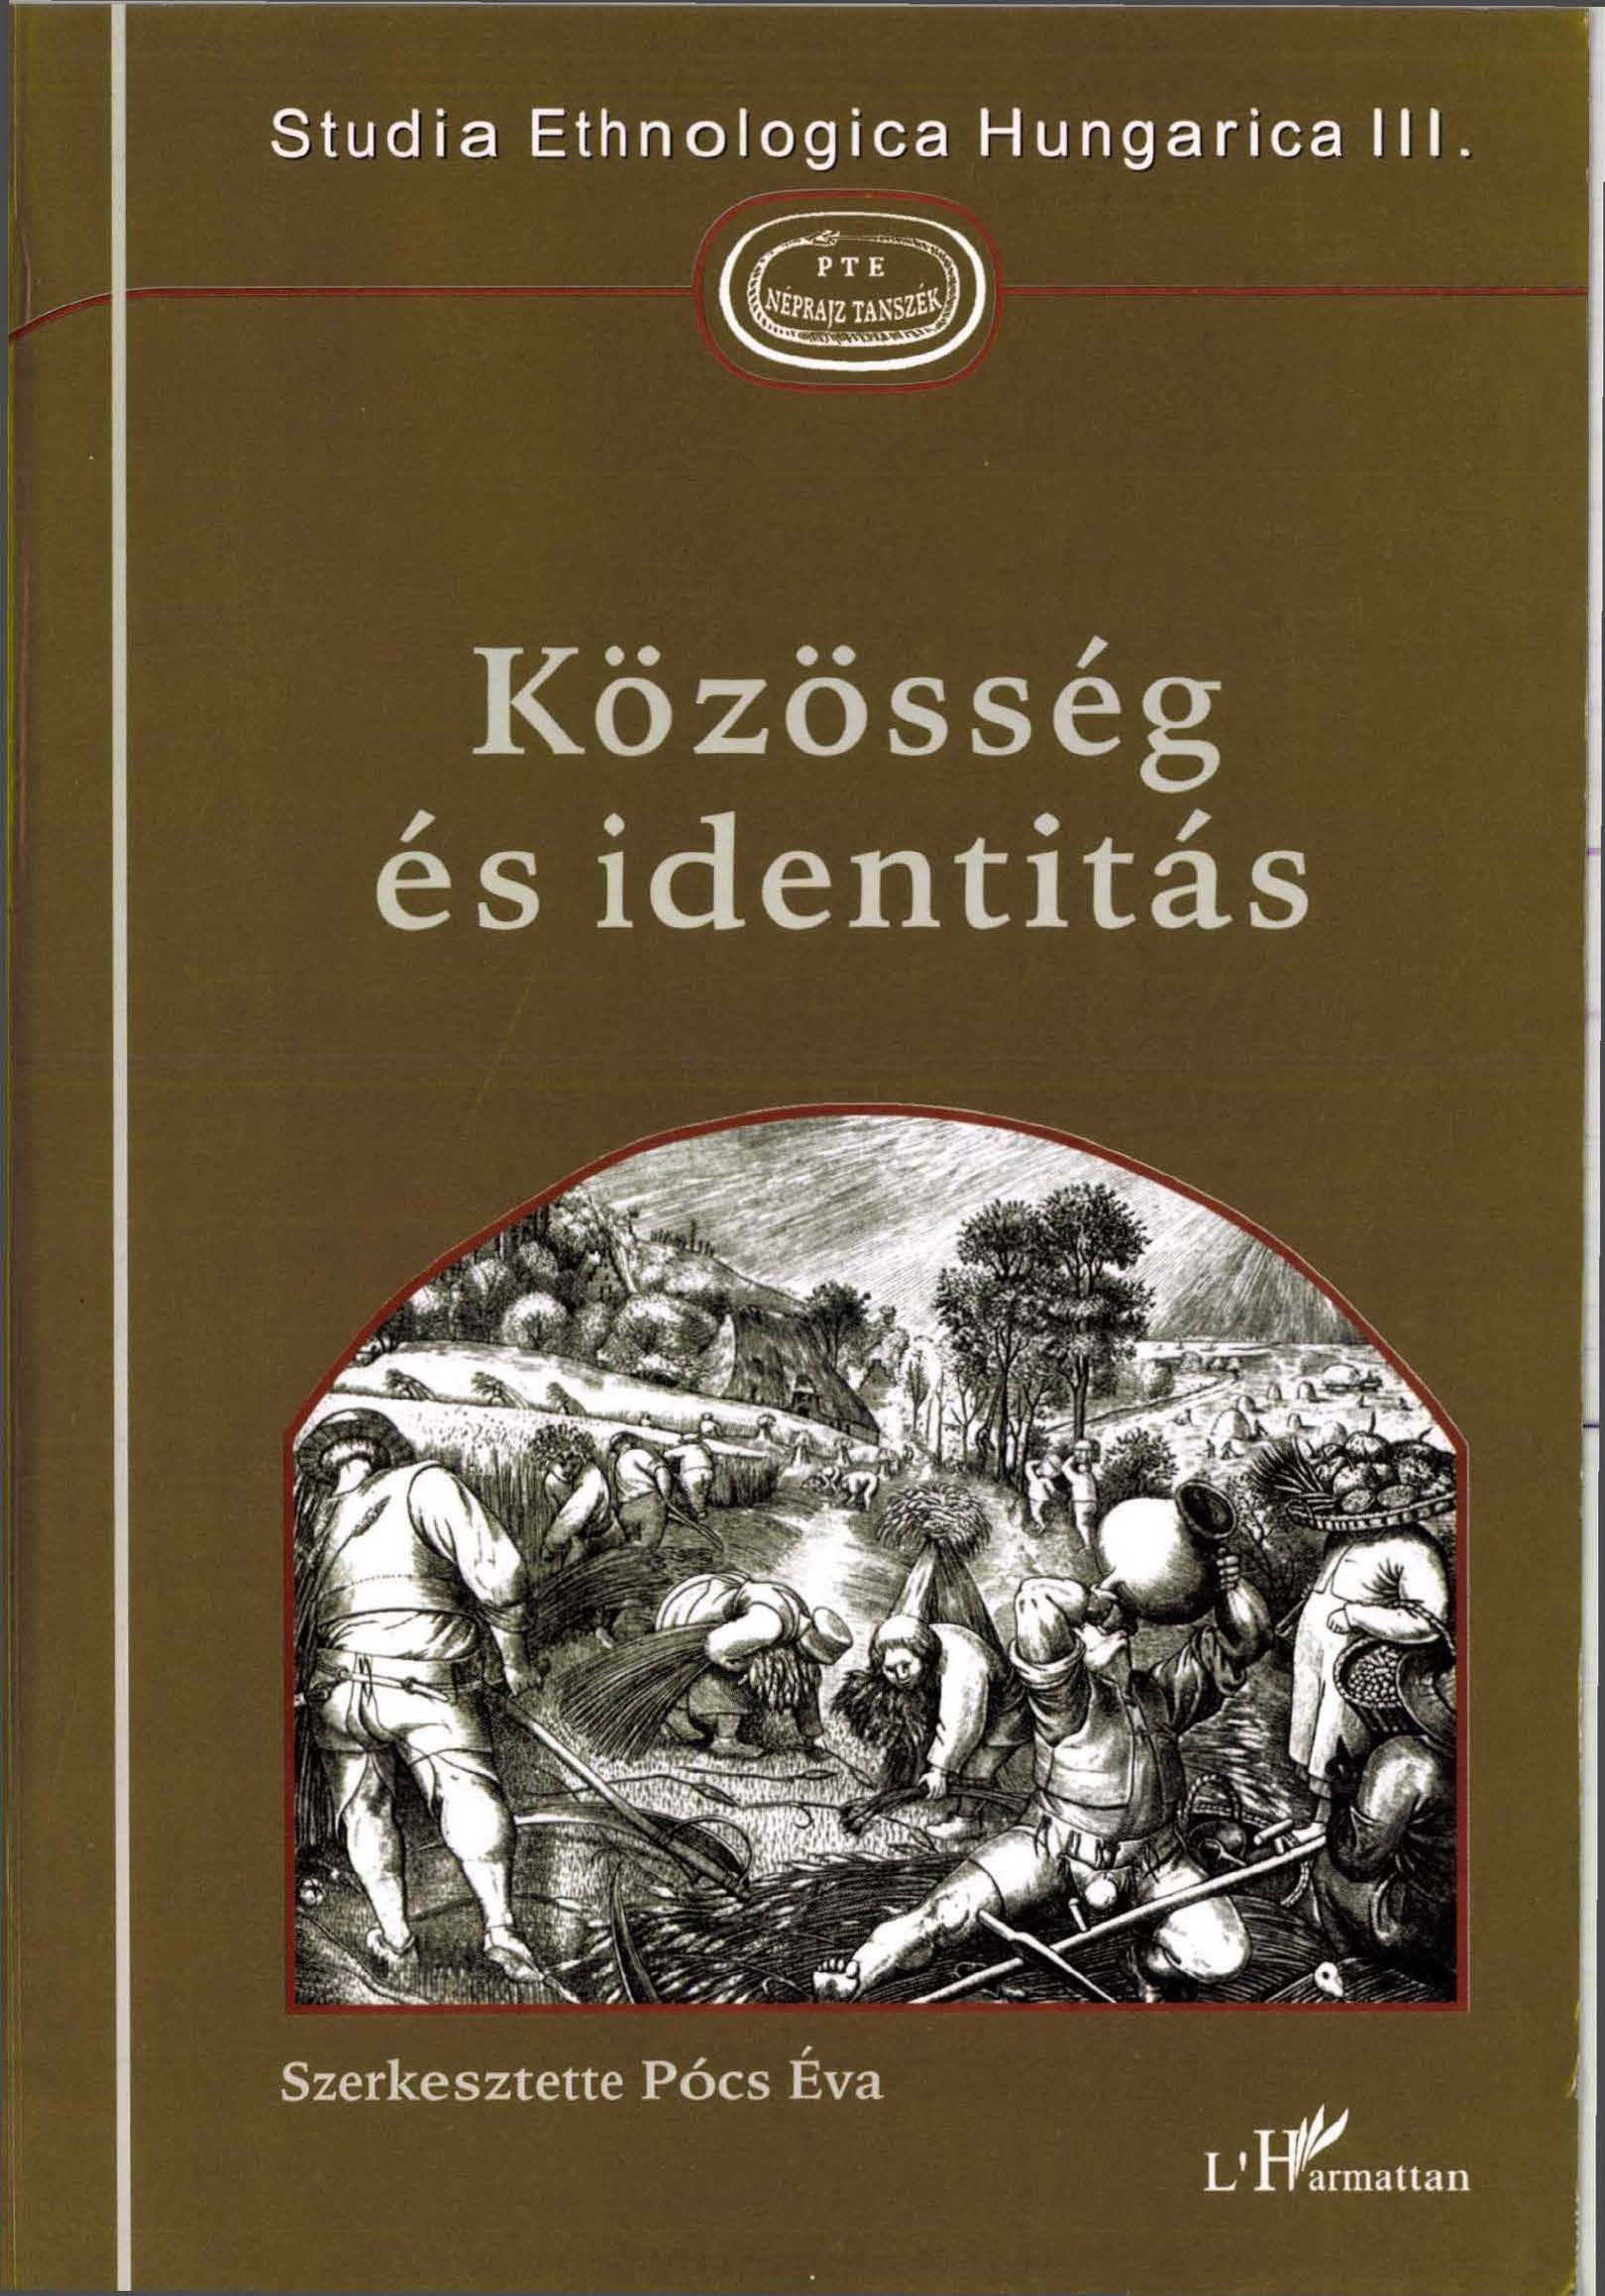 PCS . szerk. Kzssg STUD III cover